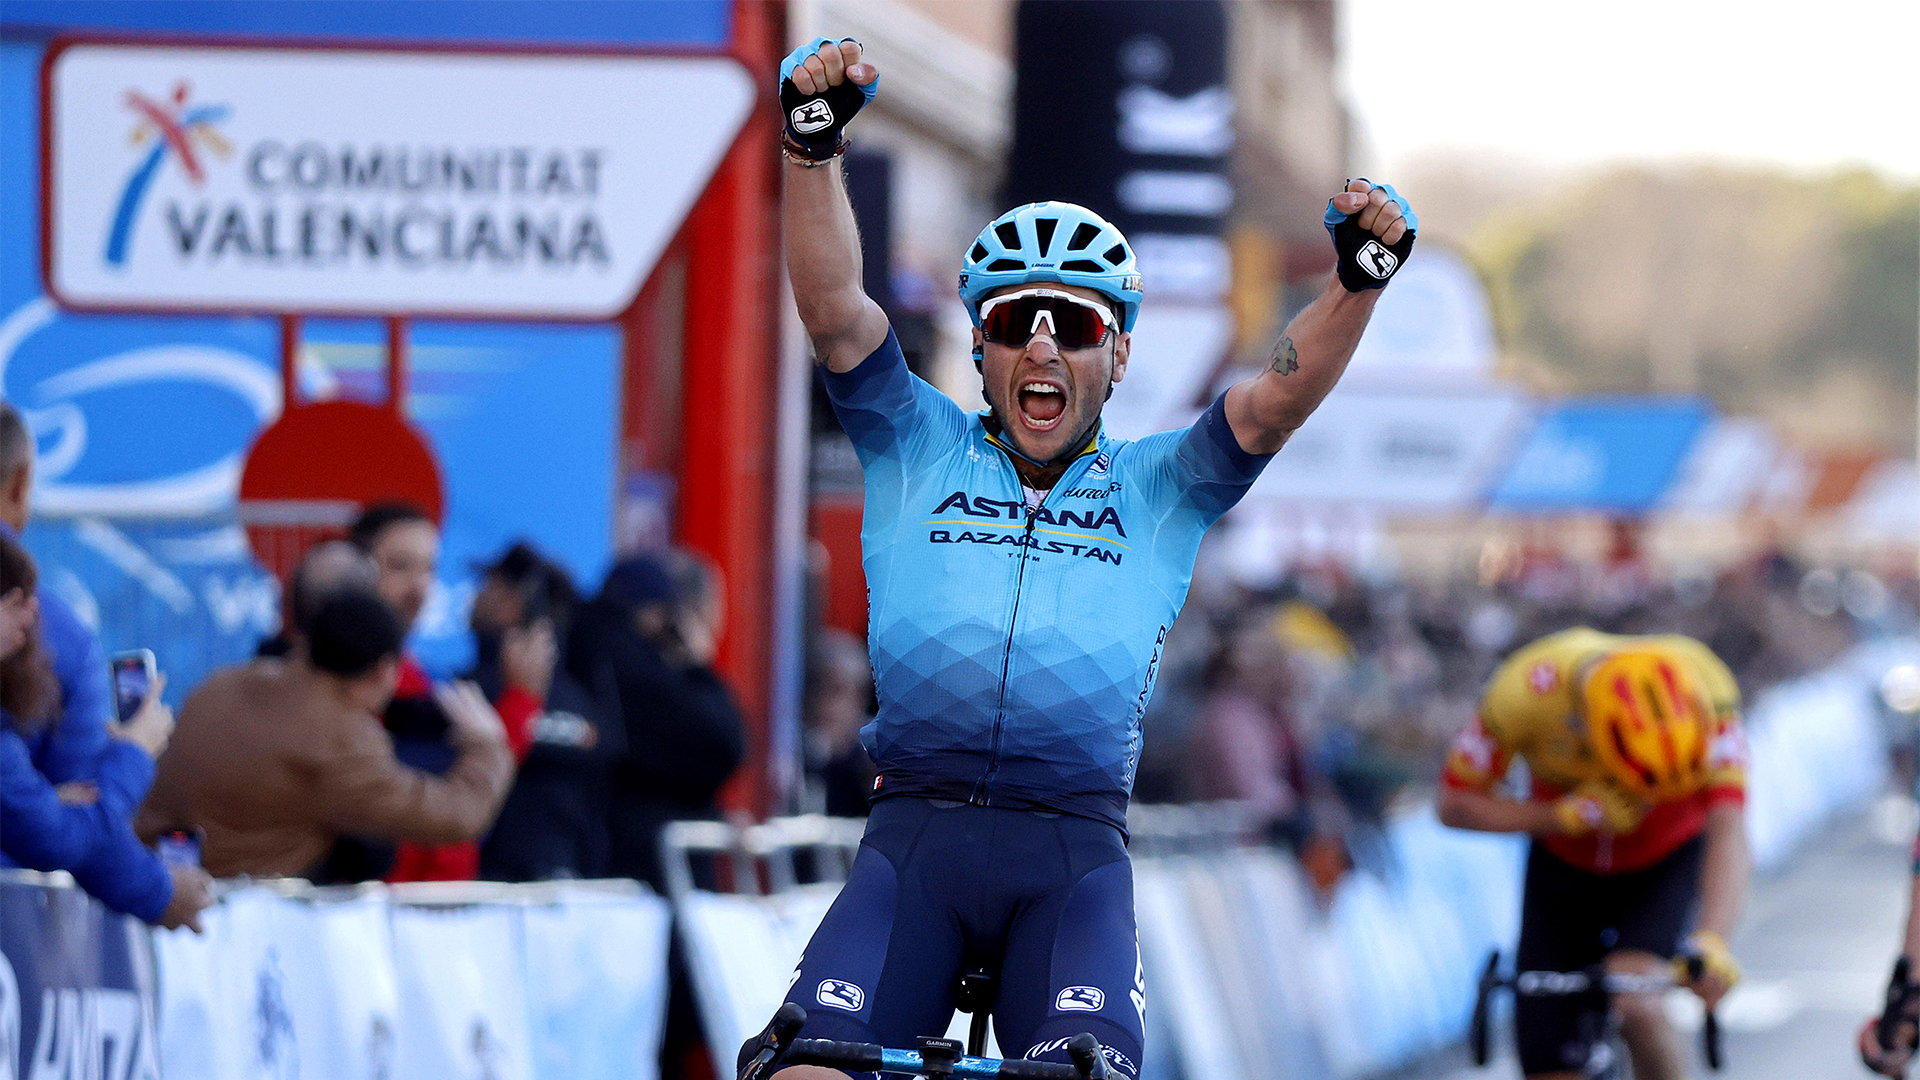 Велогонщик «Астаны» Симоне Веласко стал победителем третьего этапа «Вуэльты Валенсии»